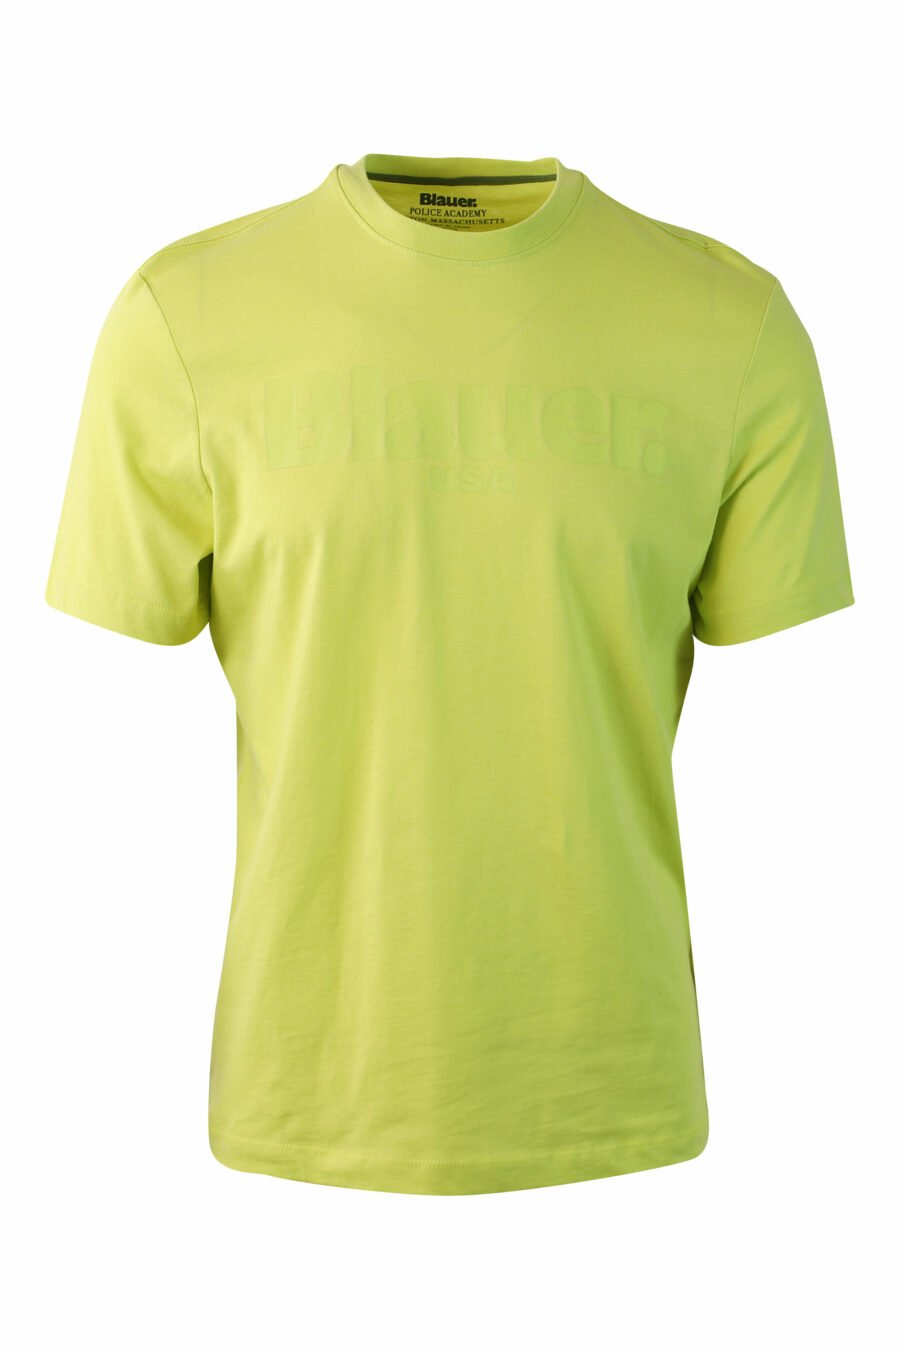 T-shirt verde lima com maxilogue monocromático - IMG 0073